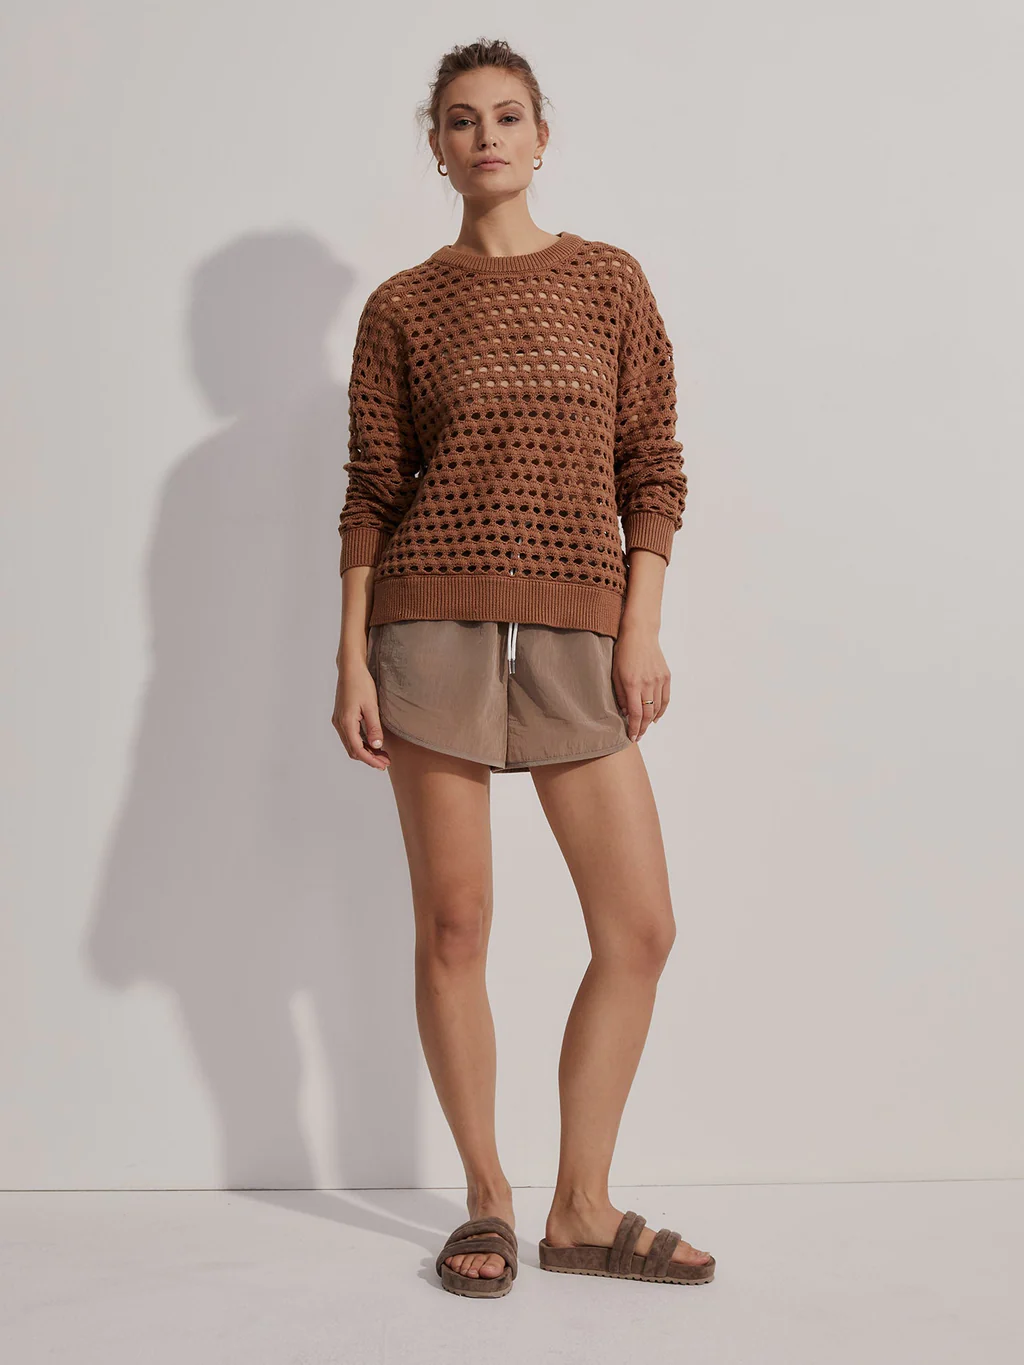 Varley brown sweater